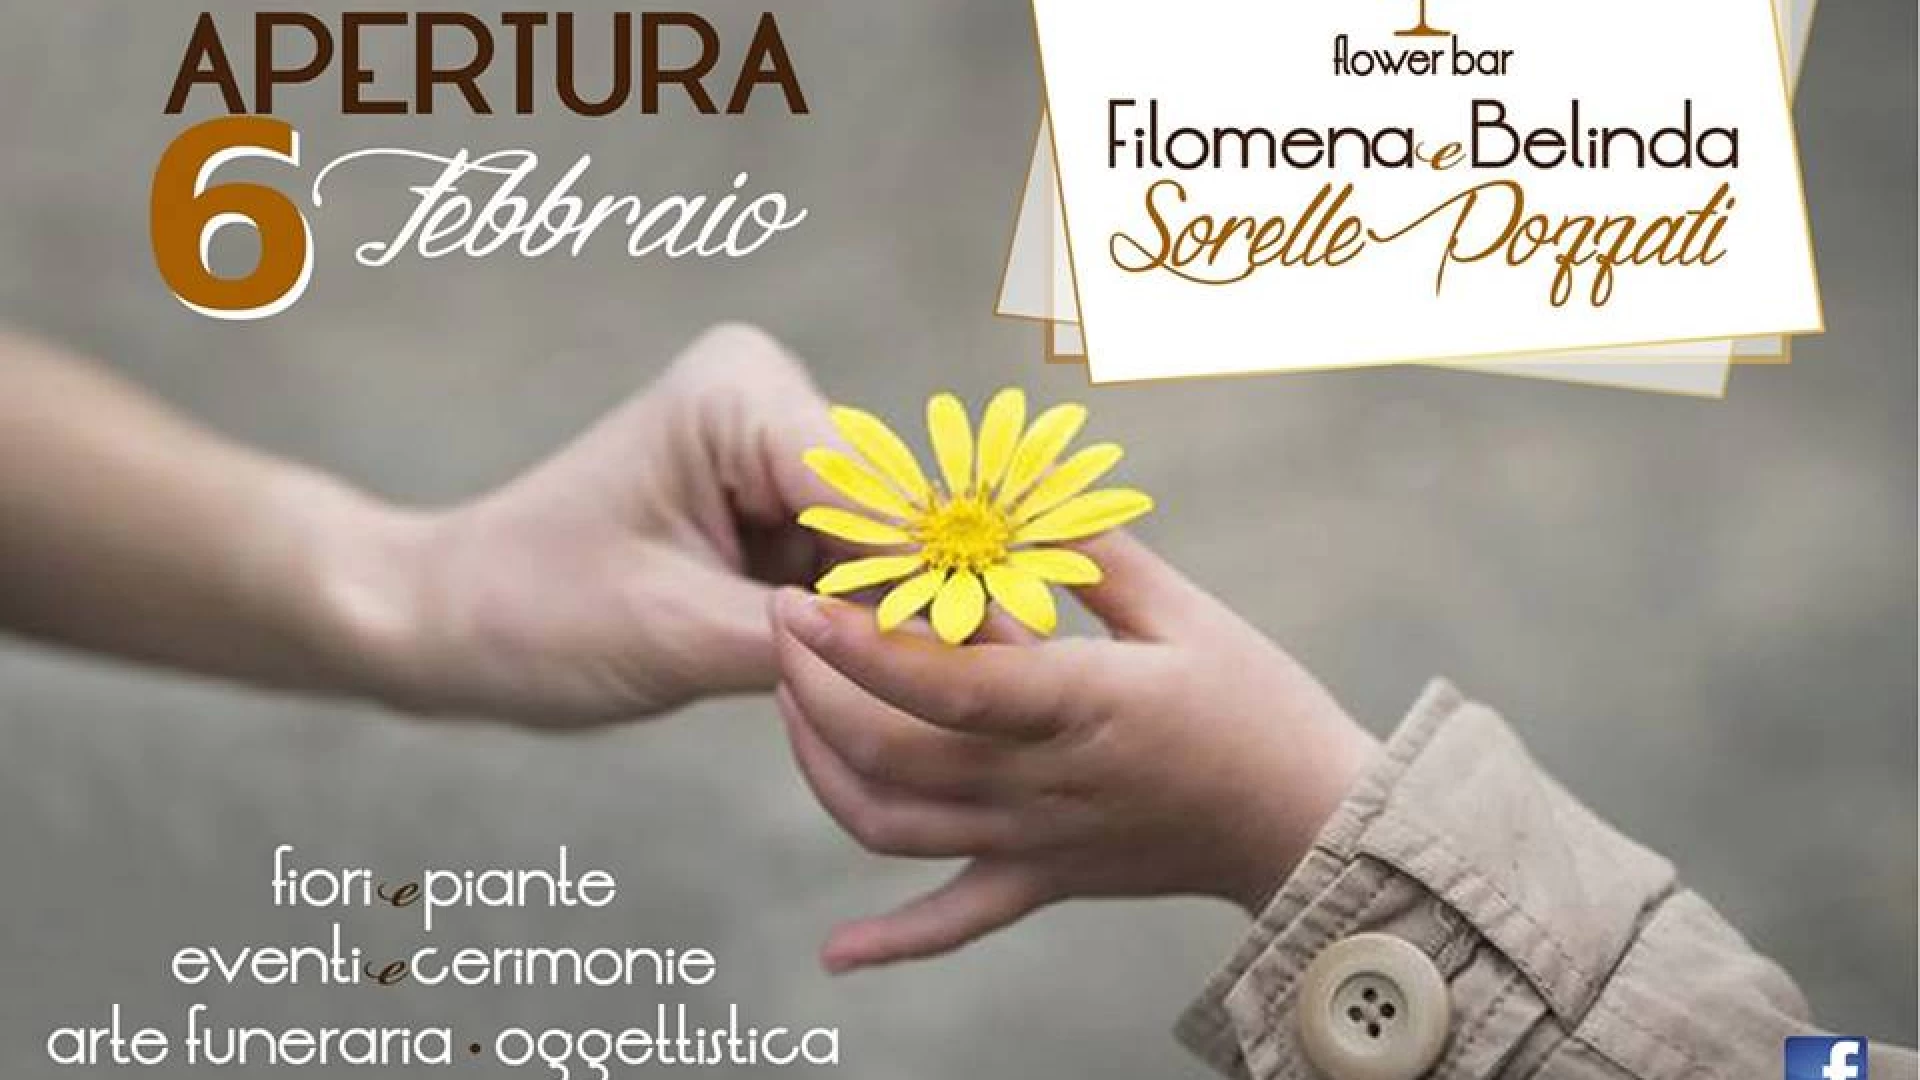 Ad Isernia il 6 febbraio apre il Flower Bar delle sorelle Filomena e Belinda Pozzati. Piante, fiori ed un modo innovativo di “coccolare” tutti i clienti.